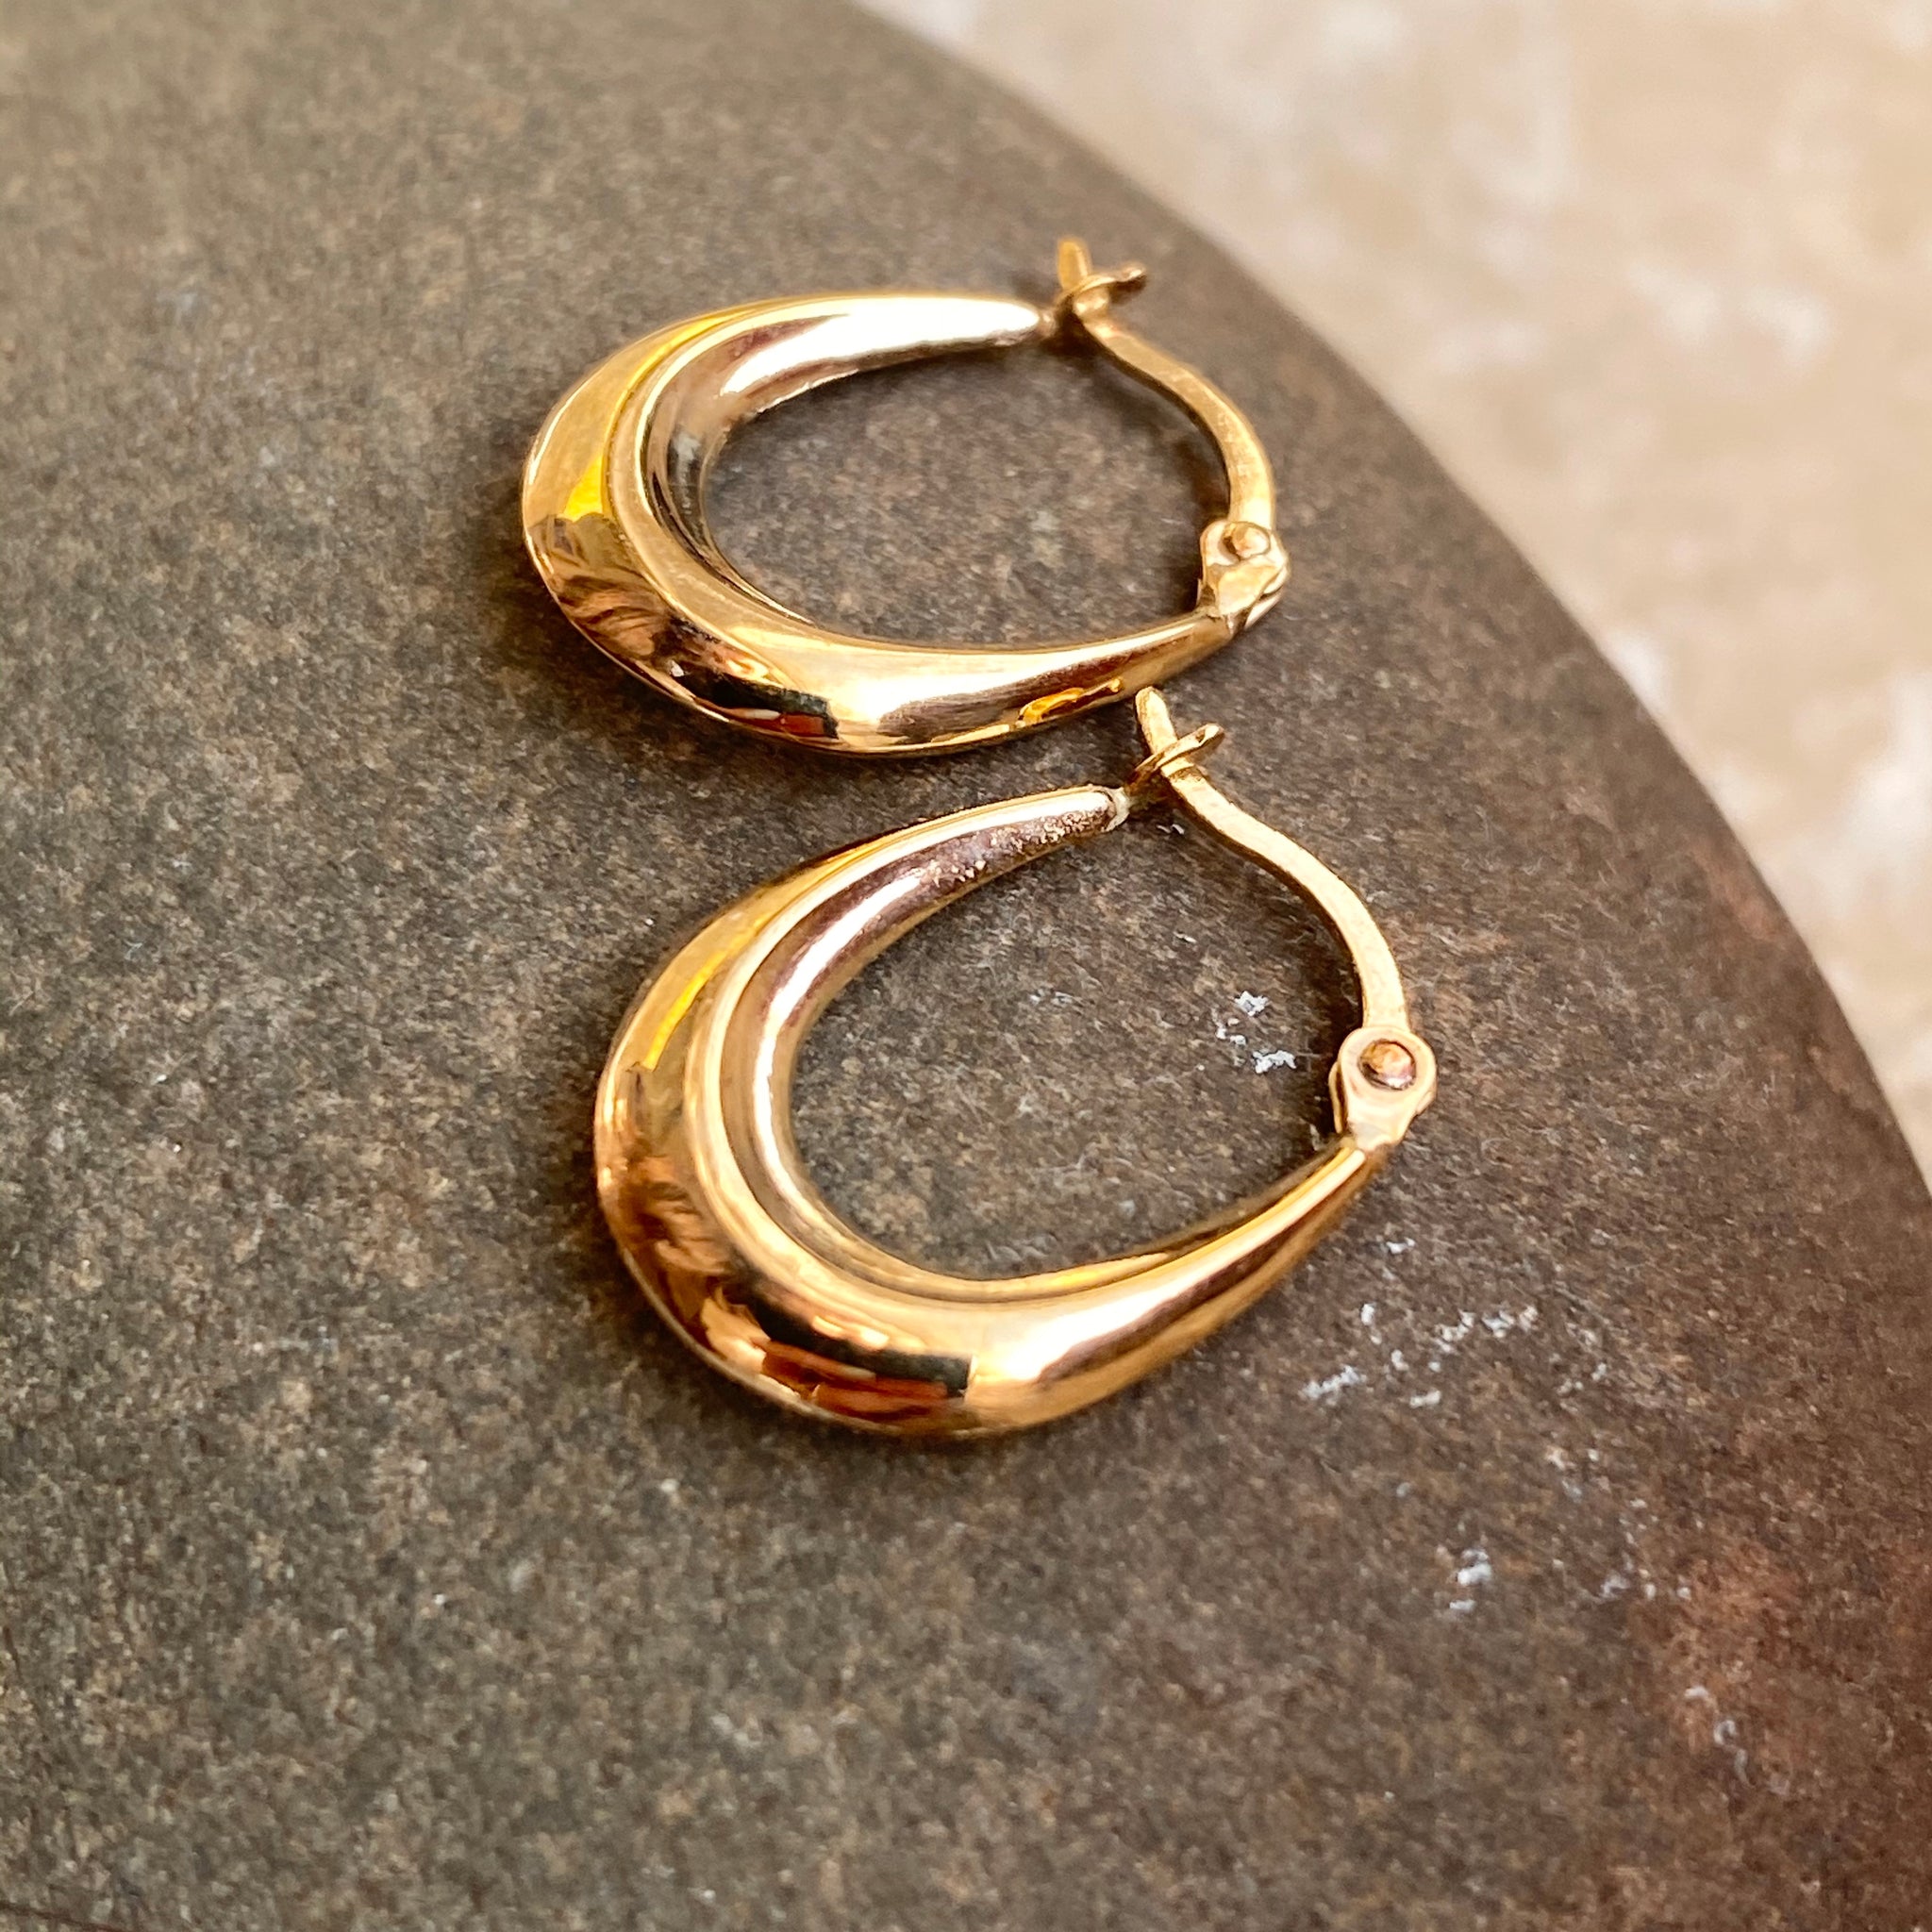 Mini Hoop Earrings in 10kt Yellow Gold